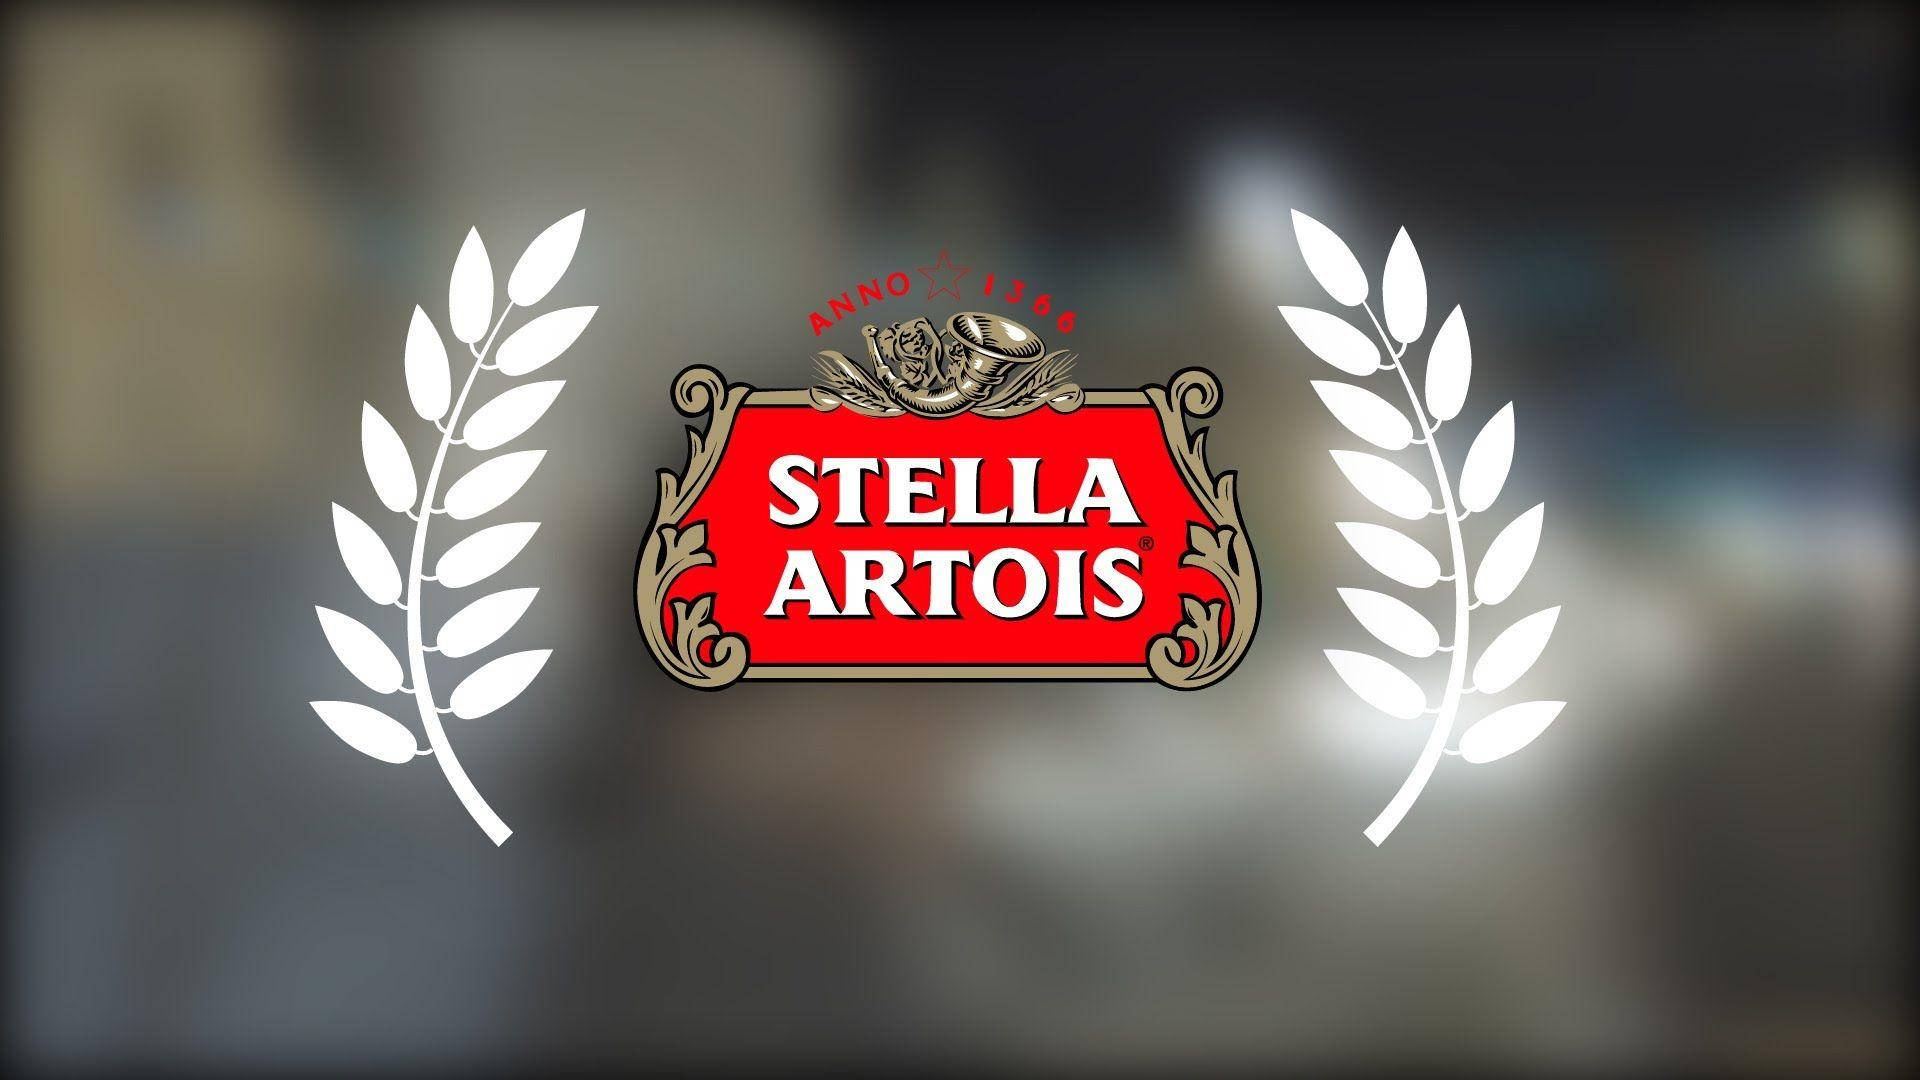 Klassiskabelgiska Ölmärket Stella Artois Logotypen. Wallpaper